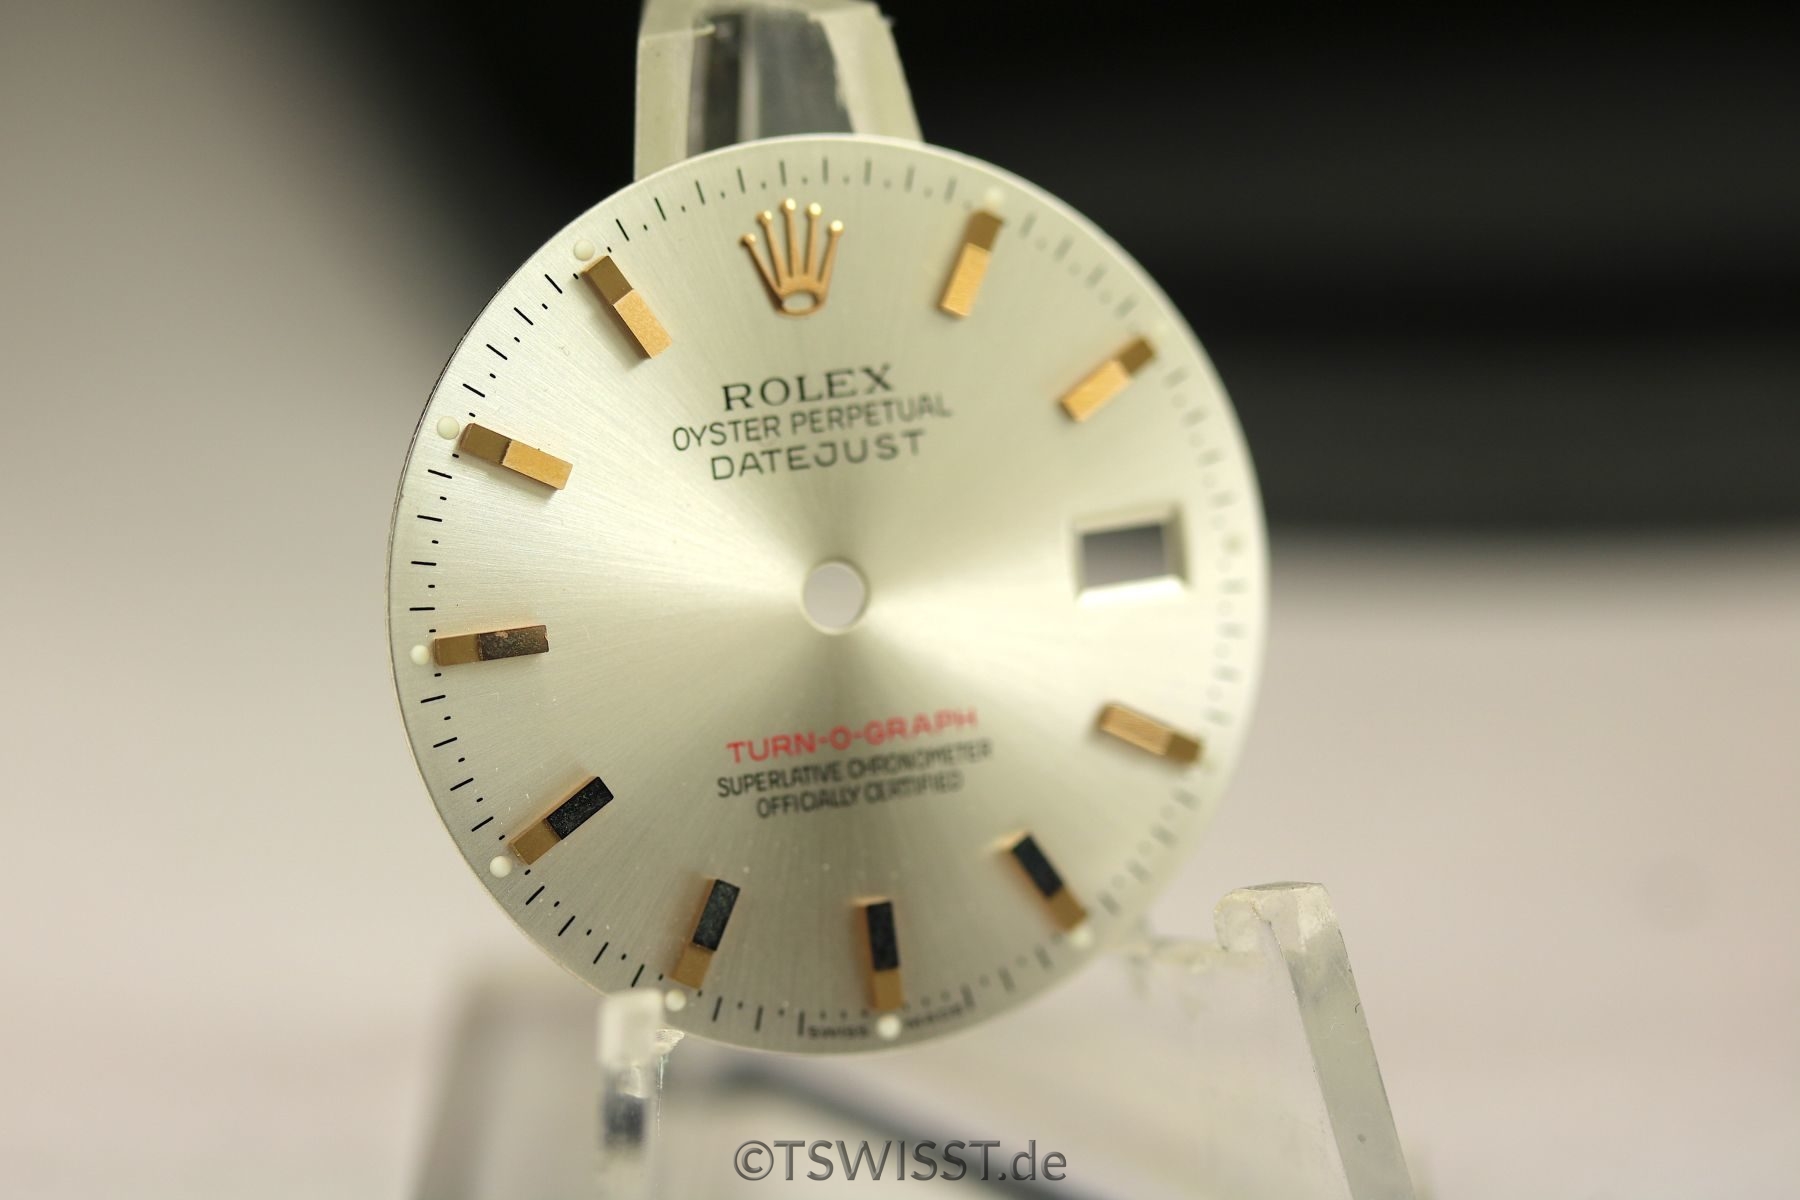 Rolex Turn-o-graph dial